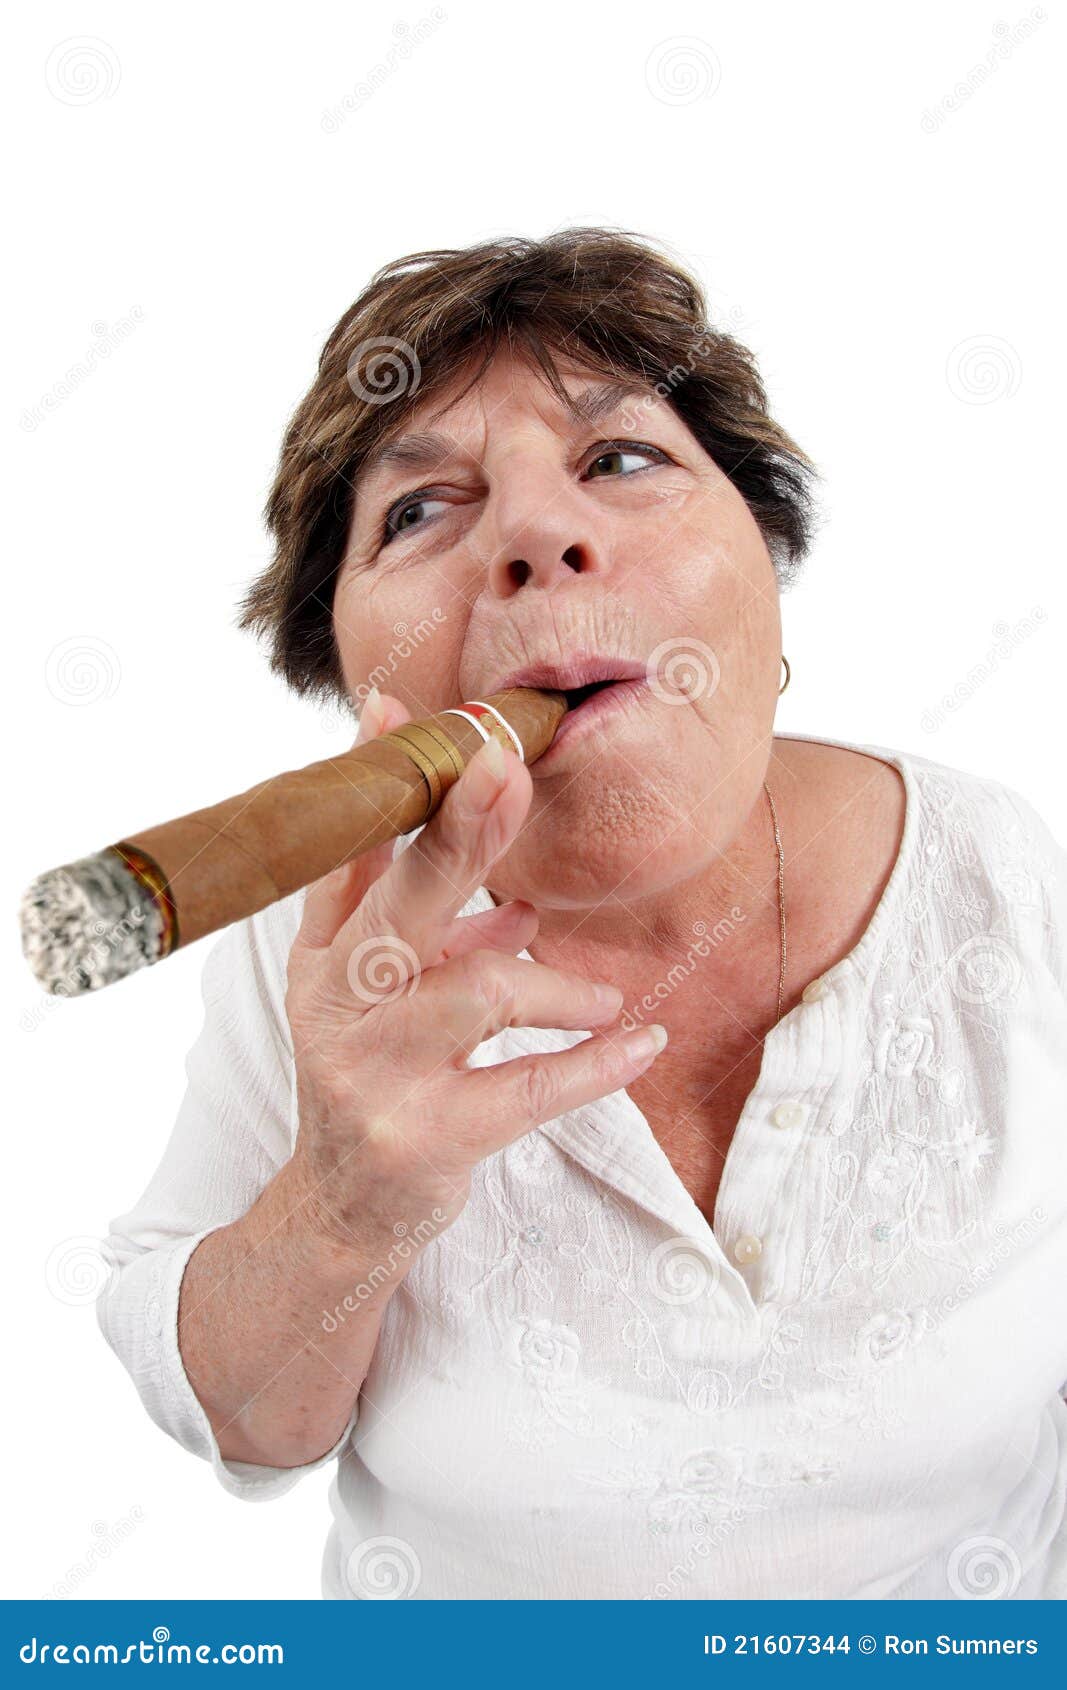 🔥 souzones fumando :D : HUEstation